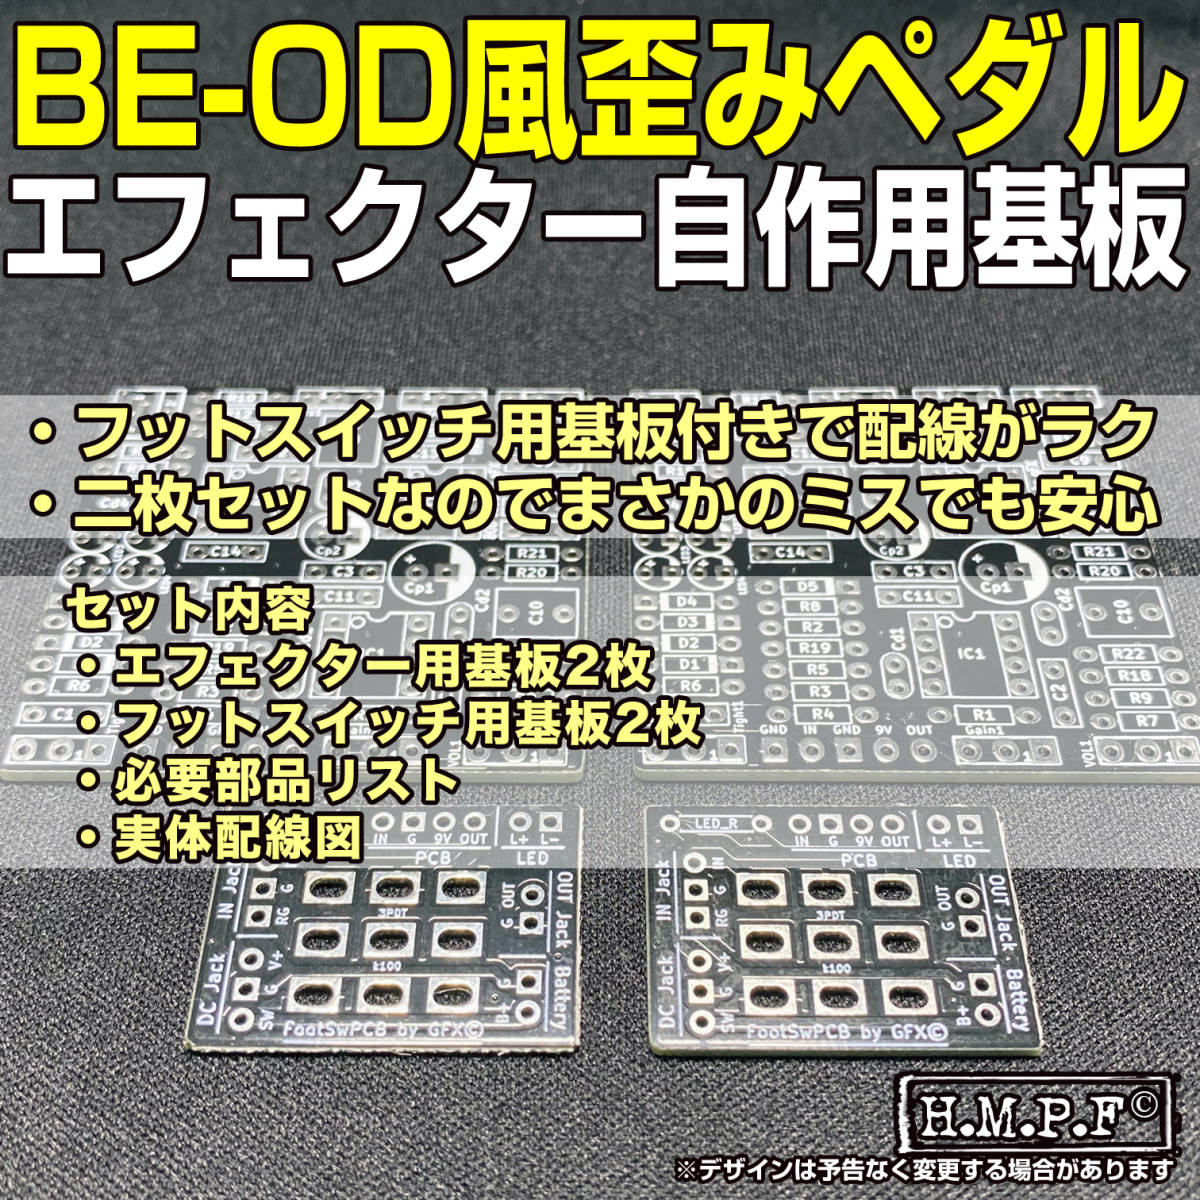 BLZ-OD 自作BE-OD 黒 18V対応 トリマー簡単アクセス